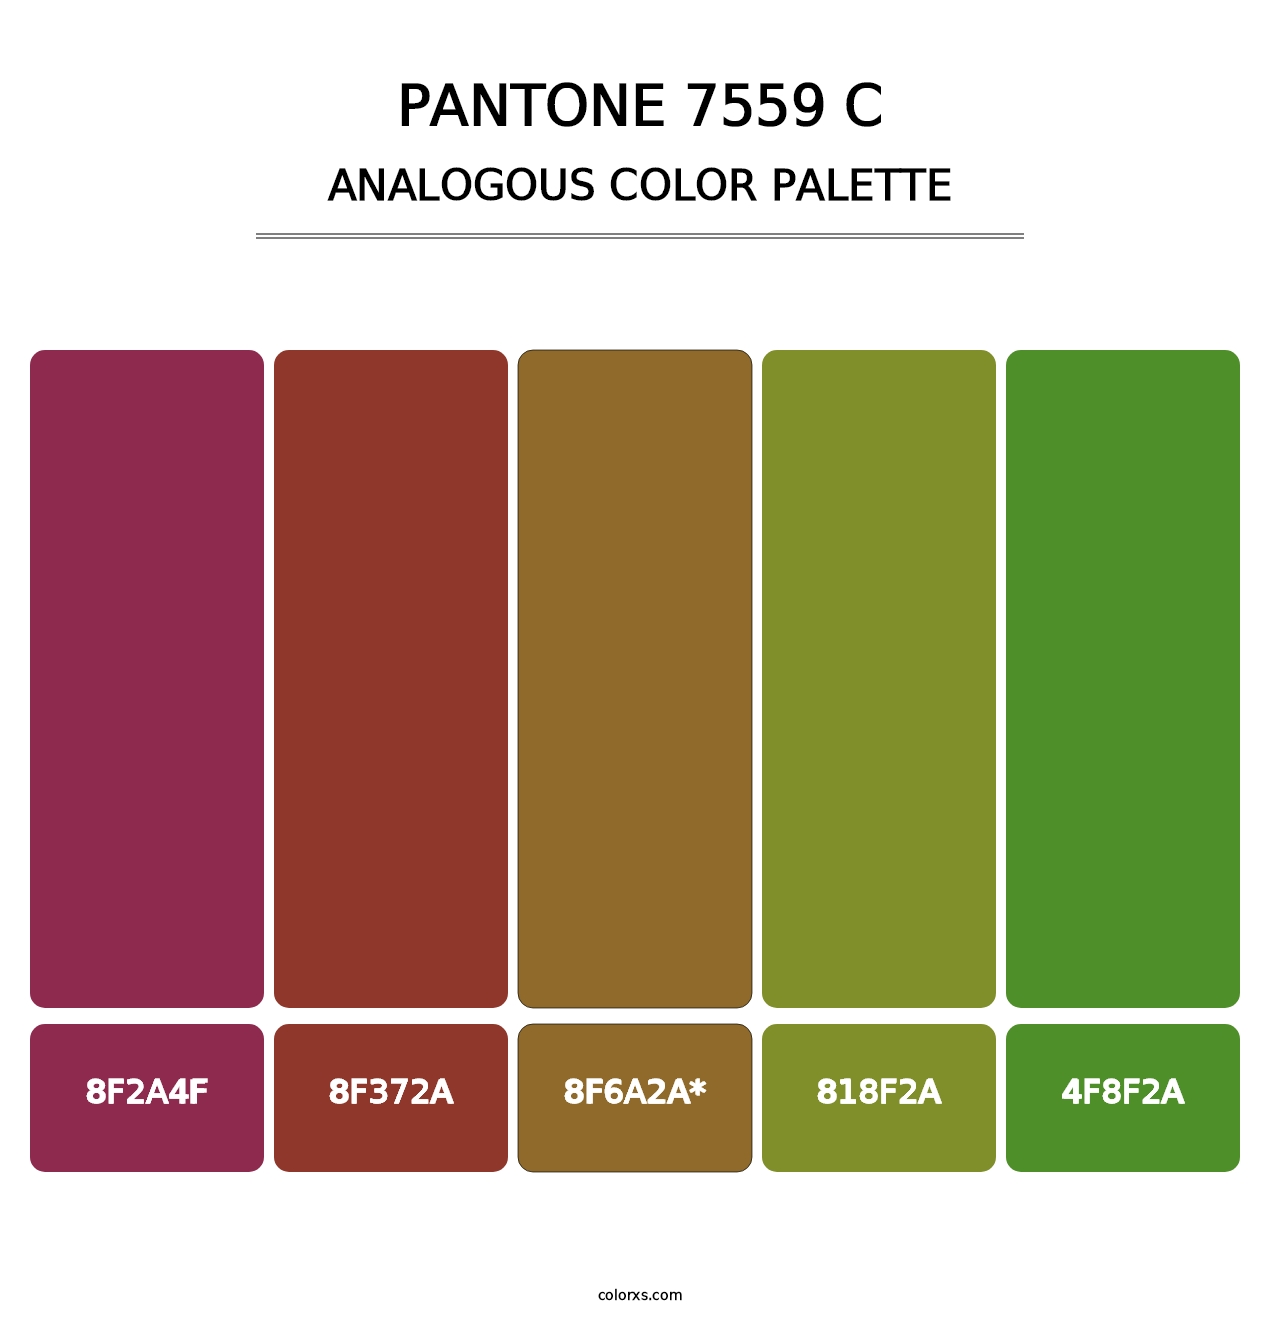 PANTONE 7559 C - Analogous Color Palette